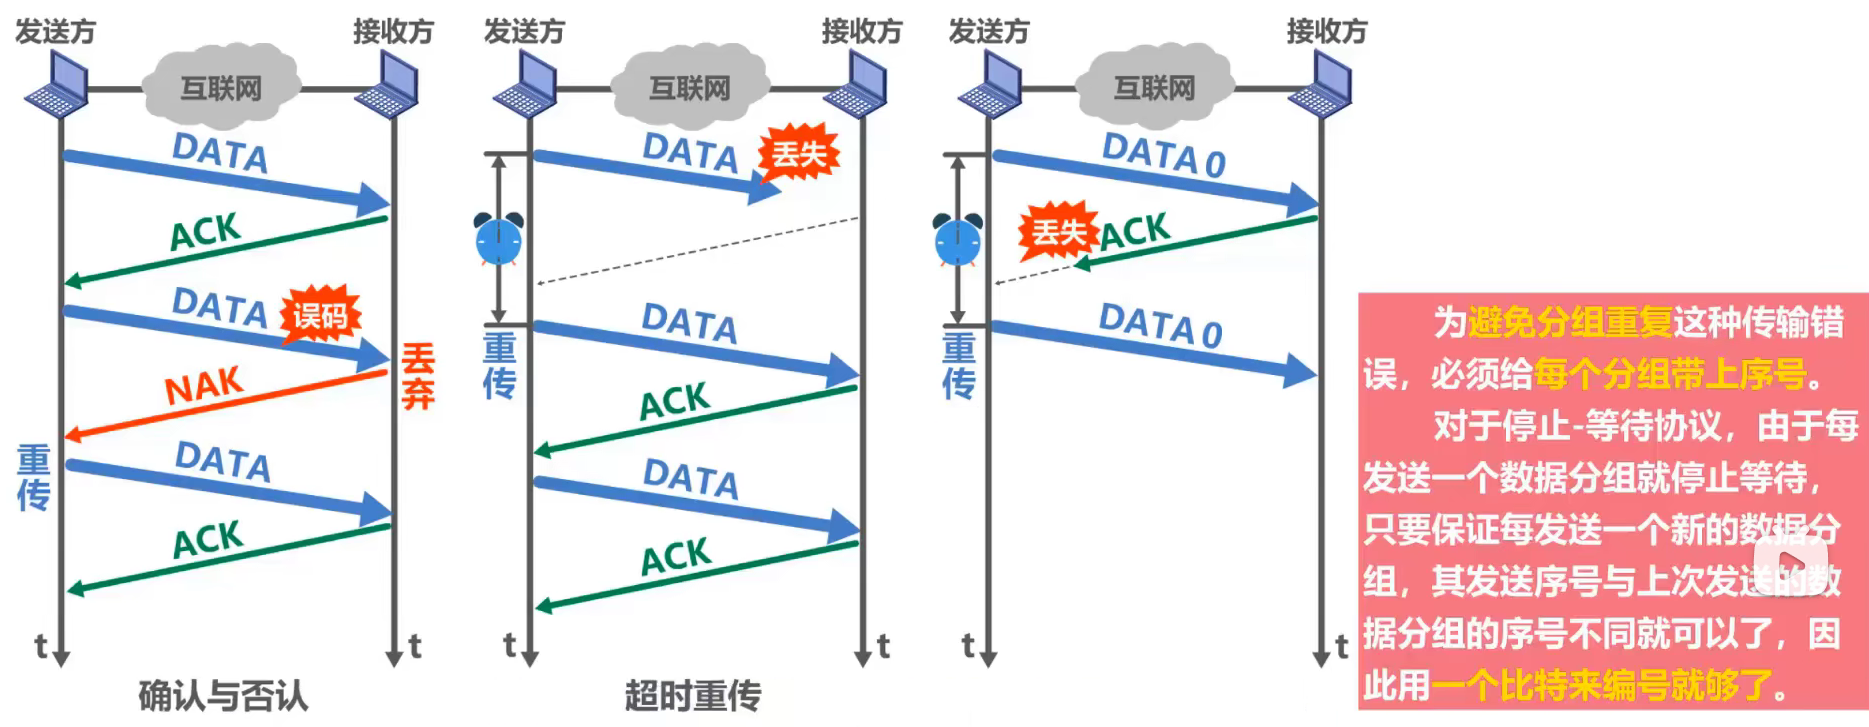 数据链路层 - 图29